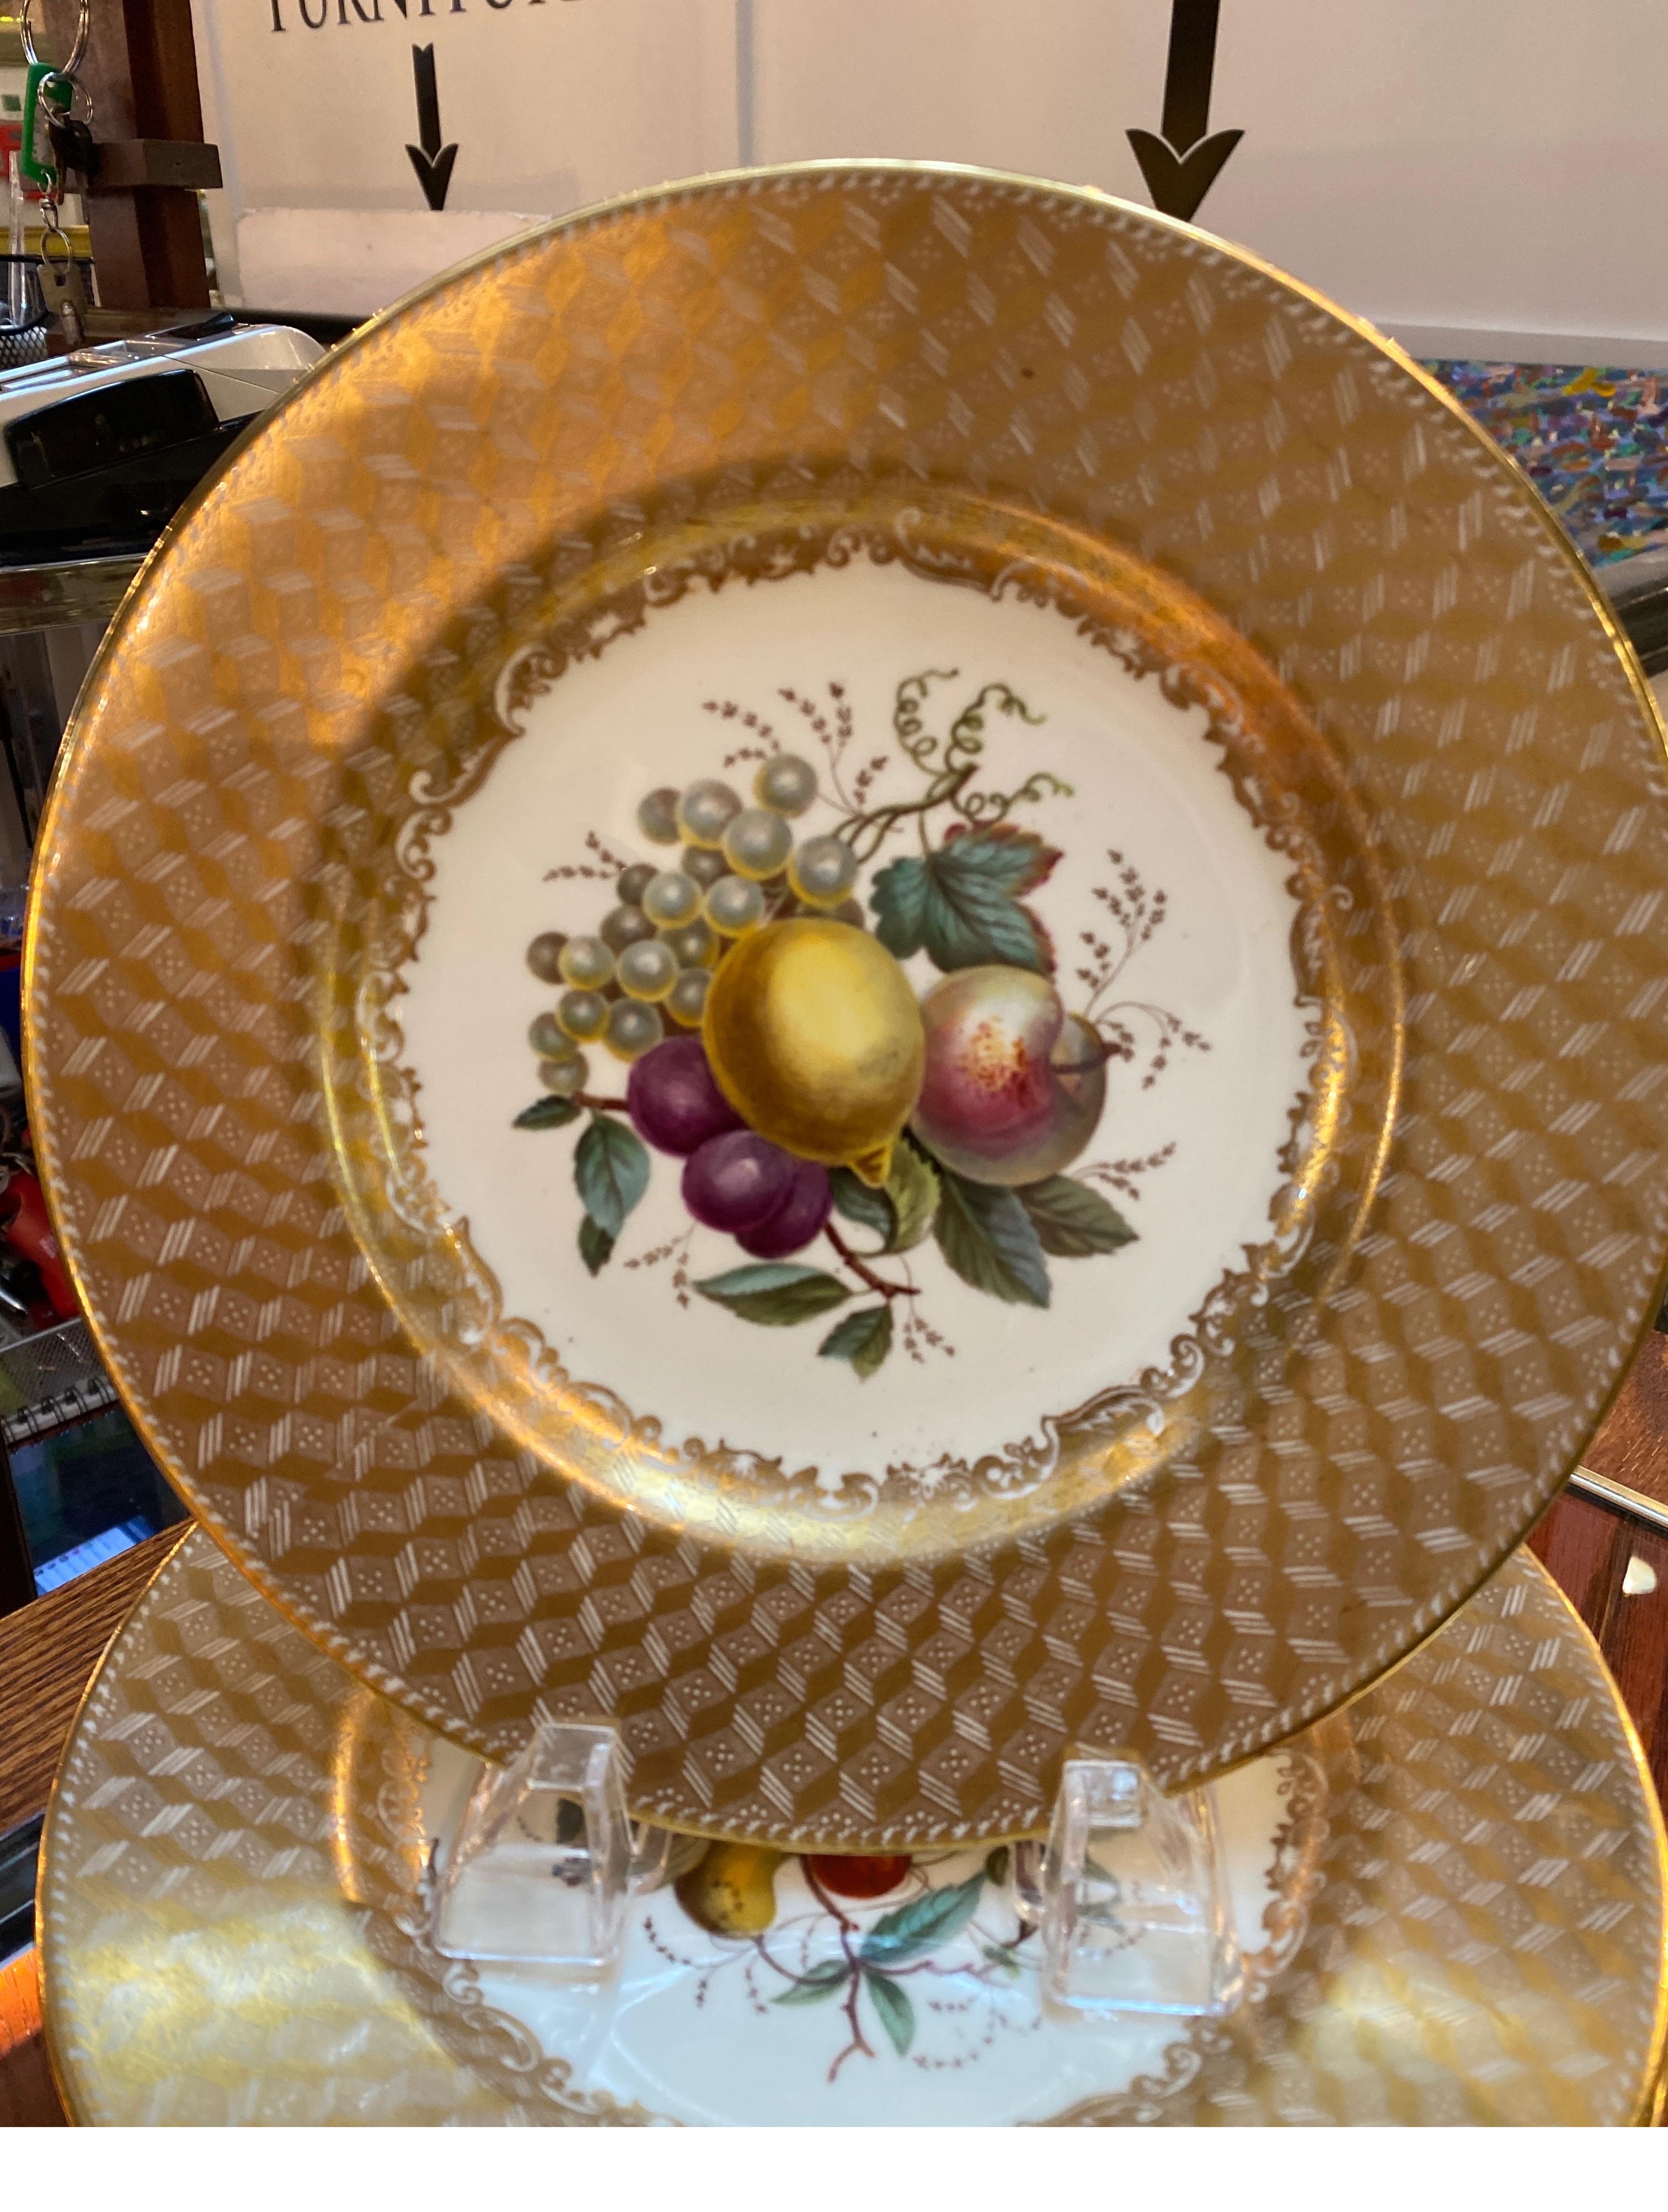 Un ensemble opulent de 10 assiettes de 9 pouces de diamètre peintes à la main, Angleterre Circa 1900-1910. Ces assiettes, dont le centre est peint à la main de motifs de fruits et dont les bordures sont incrustées d'or, portent la marque de Copland